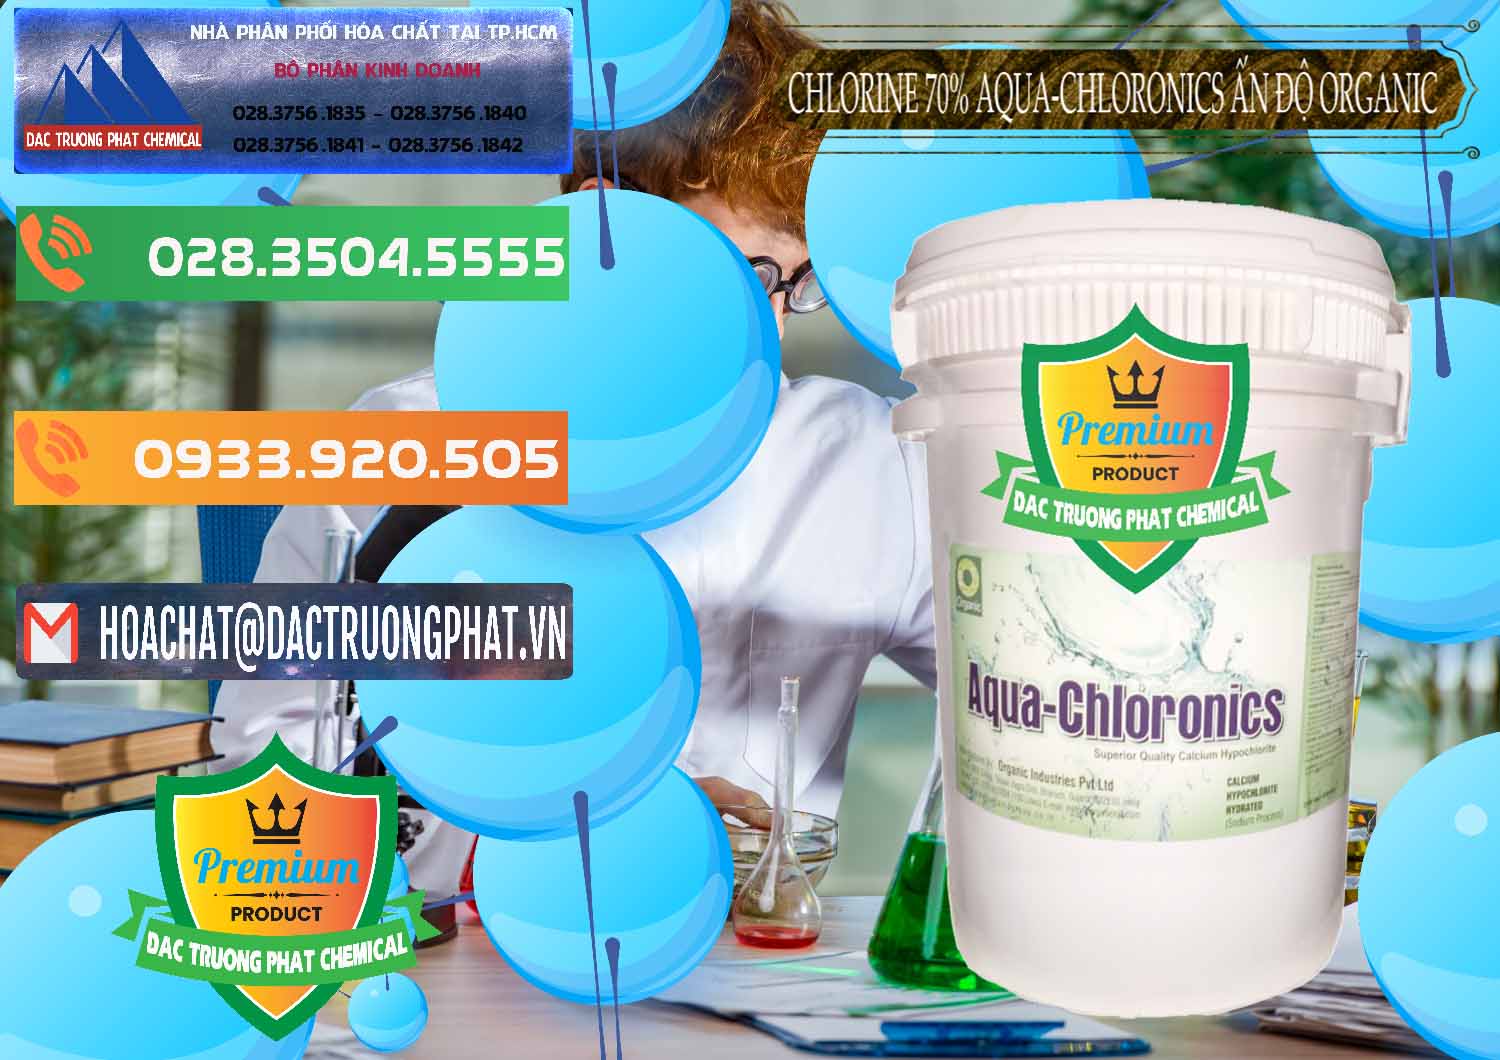 Chuyên phân phối & bán Chlorine – Clorin 70% Aqua-Chloronics Ấn Độ Organic India - 0211 - Chuyên cung cấp - nhập khẩu hóa chất tại TP.HCM - hoachatxulynuoc.com.vn